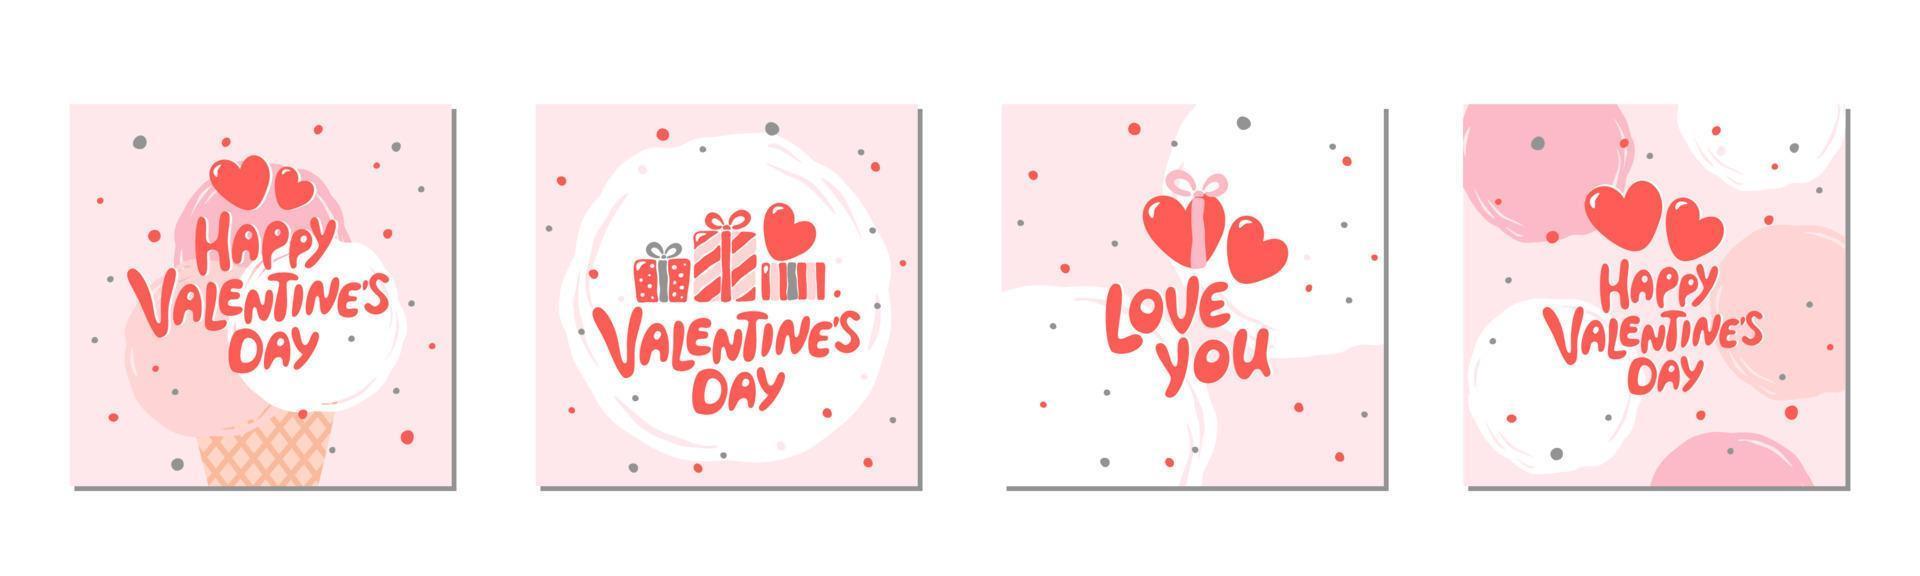 impostato di San Valentino giorno saluto carte con mano scritto saluto scritta. adatto per sociale media messaggi, banner design. vettore illustrazione.